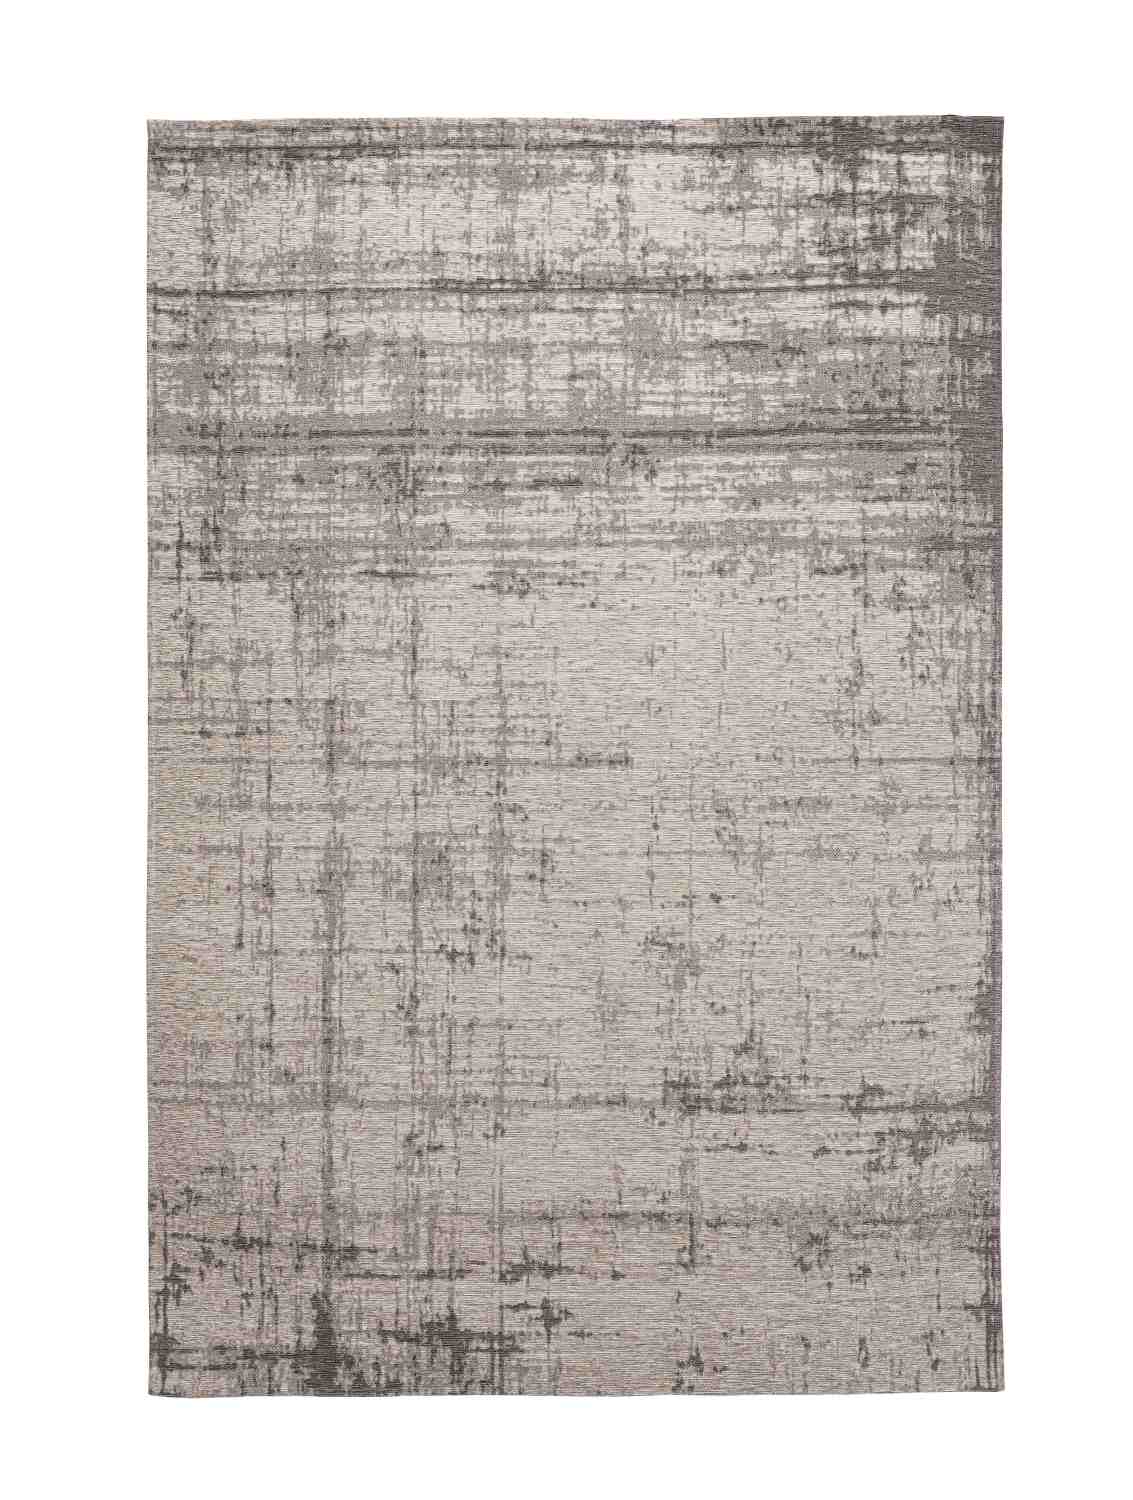 Der Teppich Yuno überzeugt mit seinem modernen Design. Gefertigt wurde die Vorderseite aus 50% Chenille, 30% Polyester und 20% Baumwolle, die Rückseite ist aus Latex. Der Teppich besitzt eine grauen Farbton und die Maße von 155x230 cm.